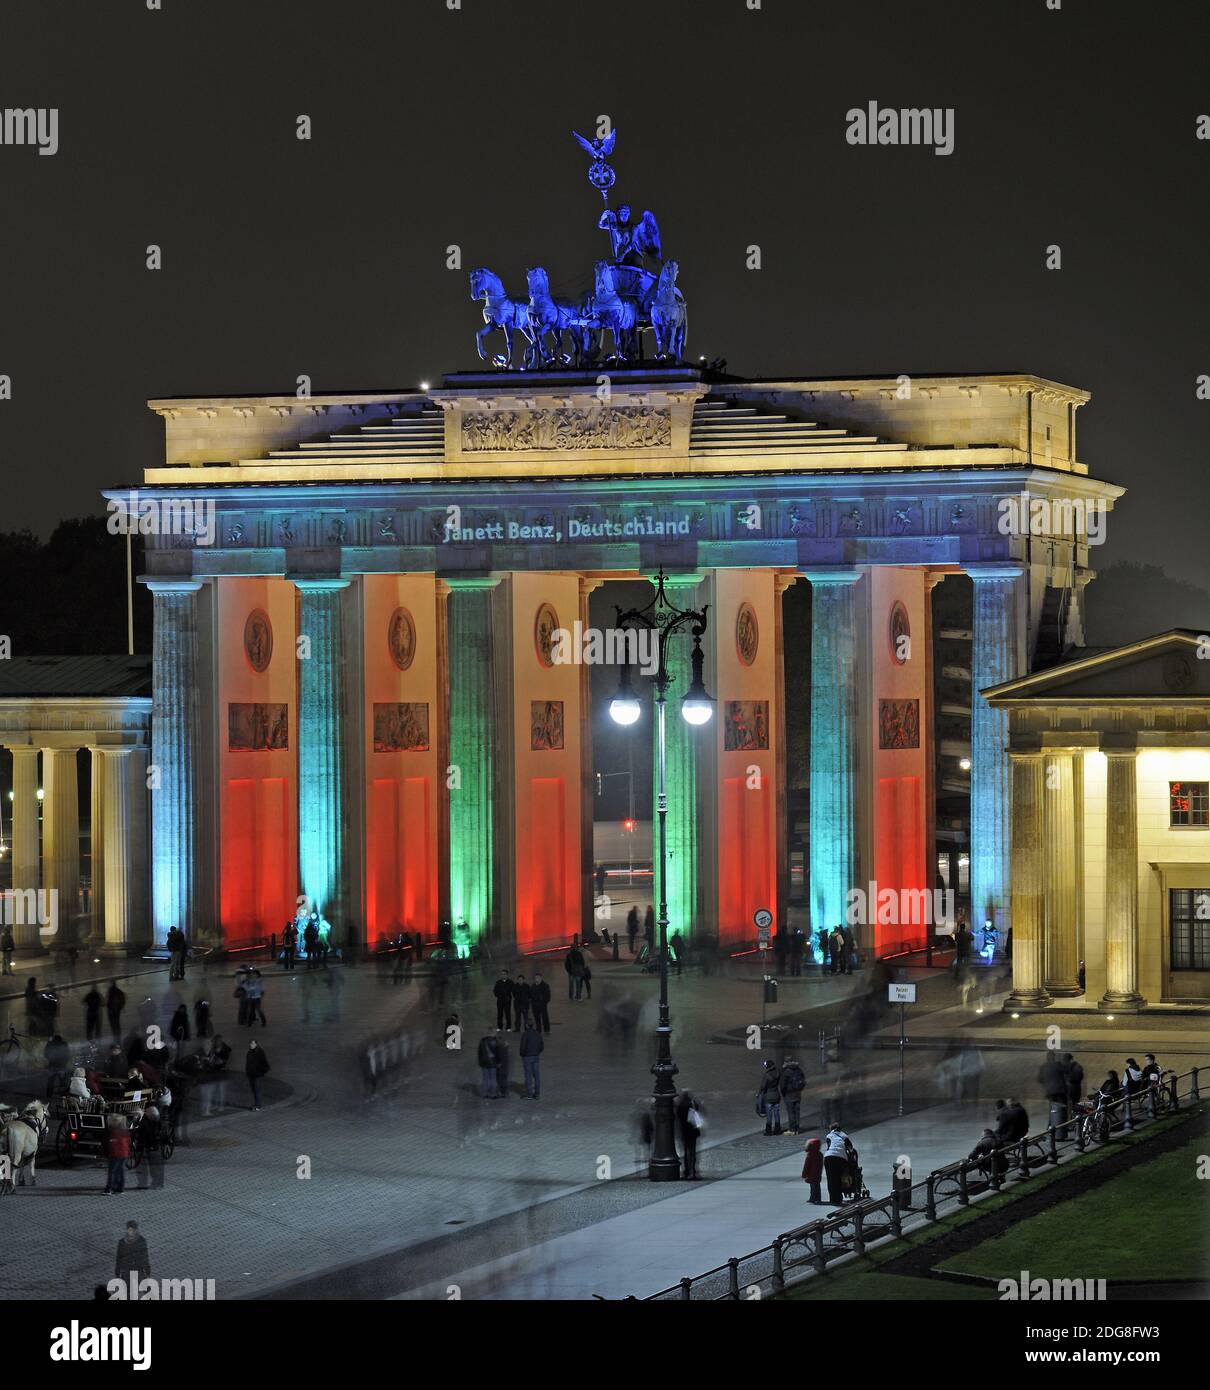 Brandenburger Tor am Pariser Platz, Berlin, Deutschland, Europa, illuminiert zum Festival of Lights Stock Photo